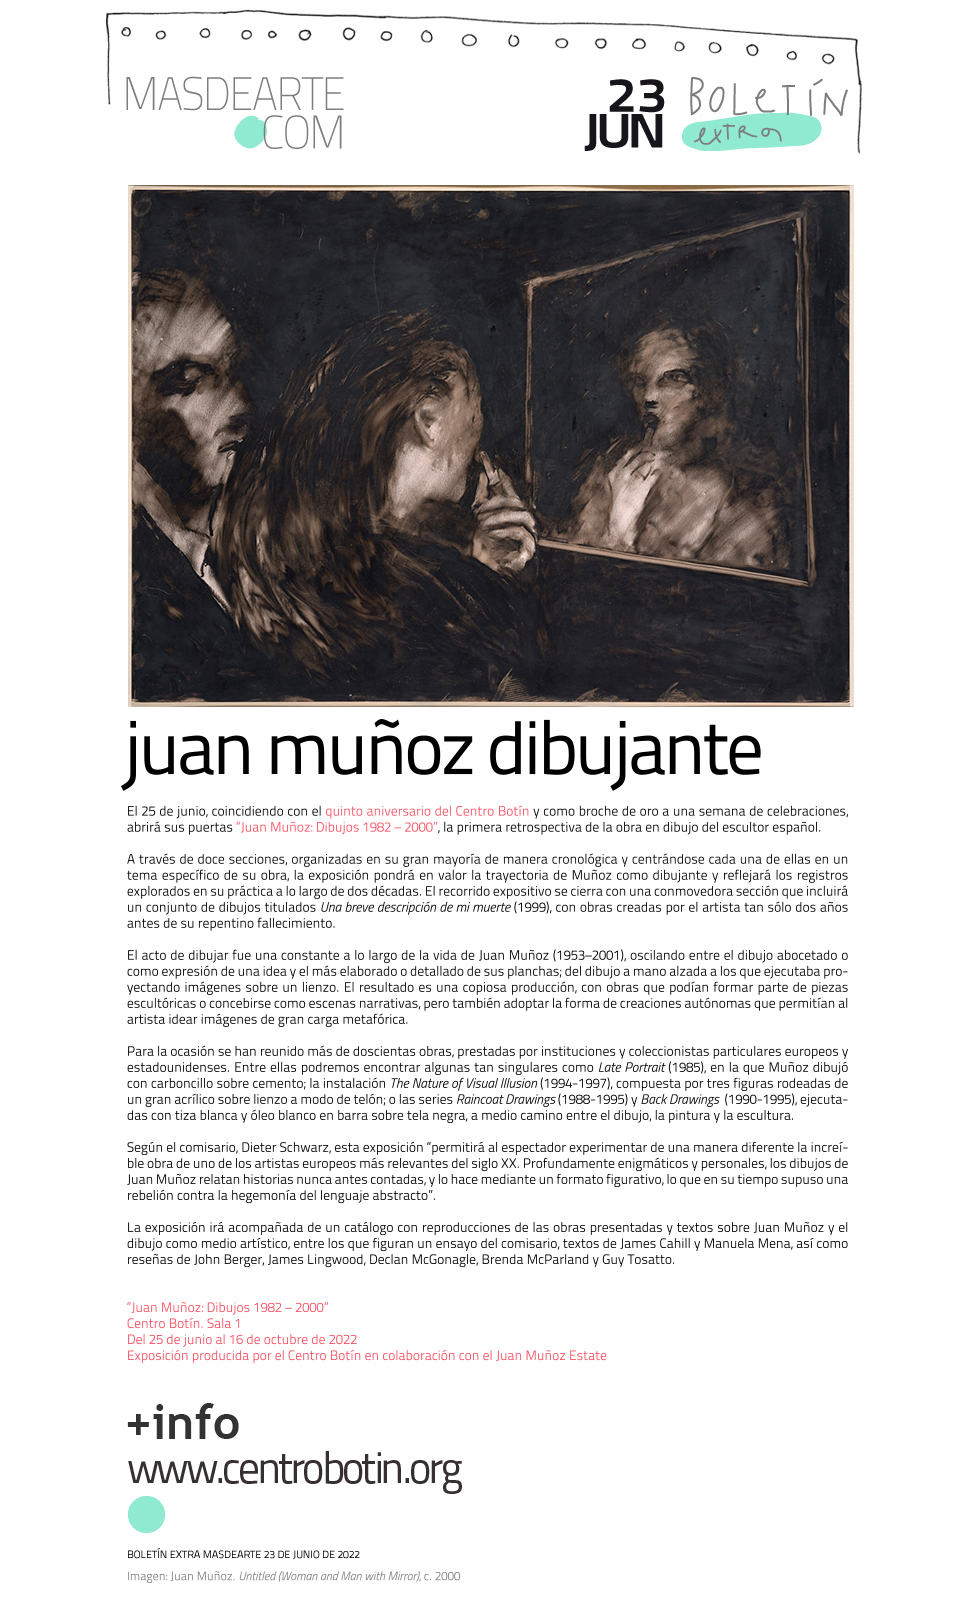 Exposición "Juan Muñoz. Dibujos 1982-2000" en el Centro
 Botín. Desde el 25 de junio al 16 de octubre de 2022